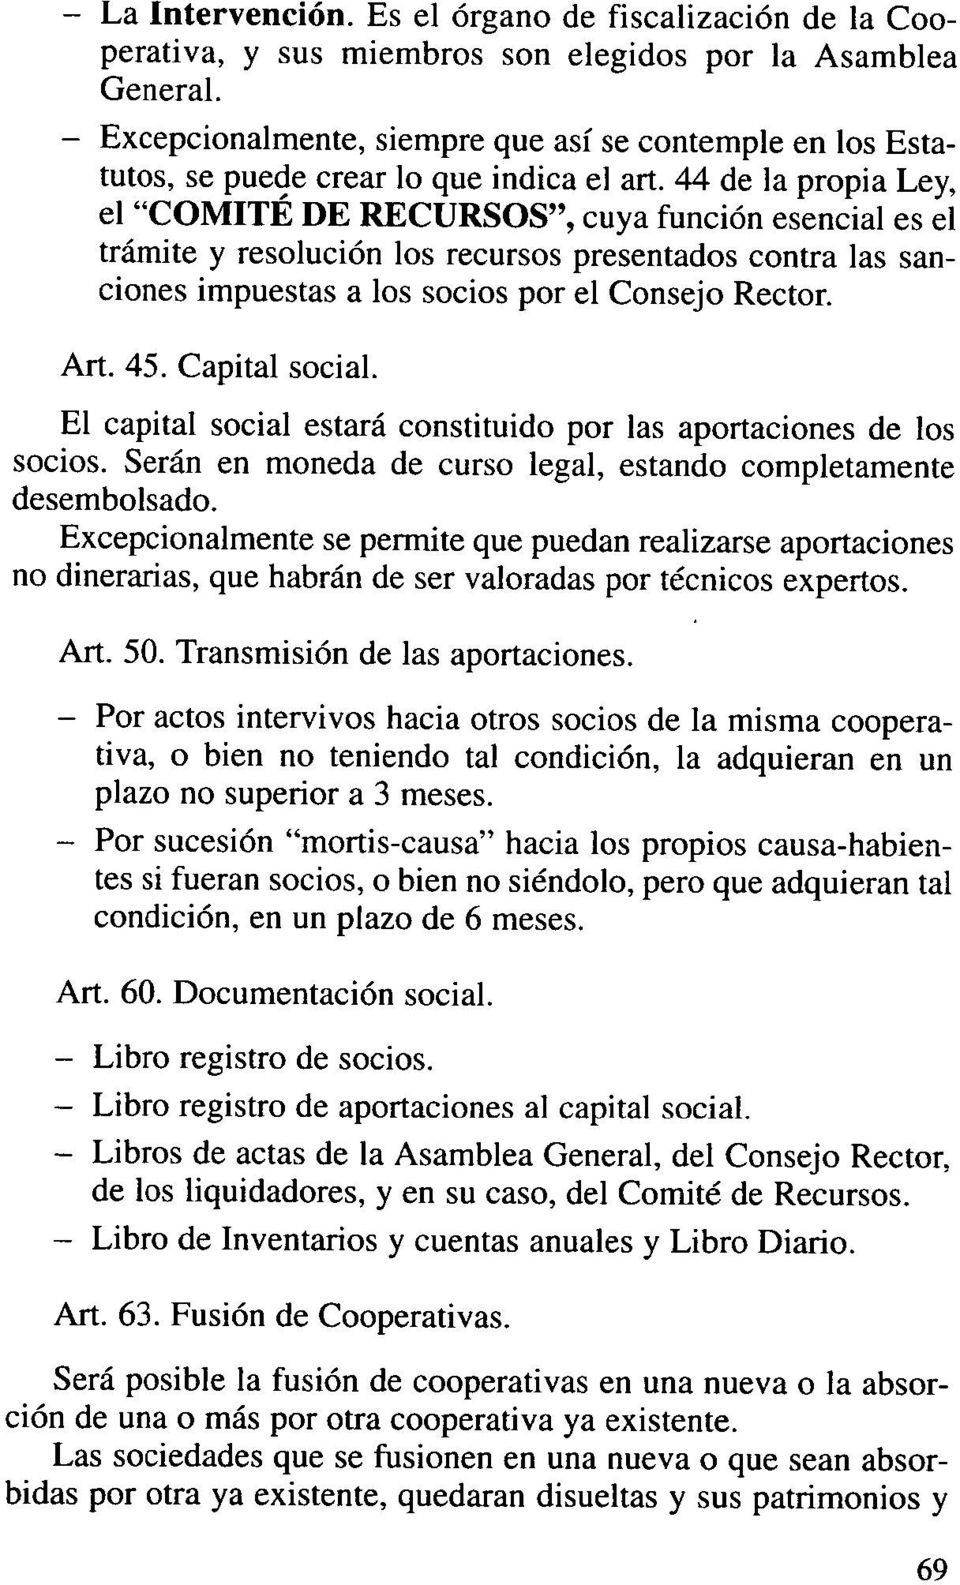 44 de la propia Ley, el "COMITÉ DE RECURSOS", cuya función esencial es el trámite y resolución los recursos presentados contra las sanciones impuestas a los socios por el Consejo Rector. Art. 45.